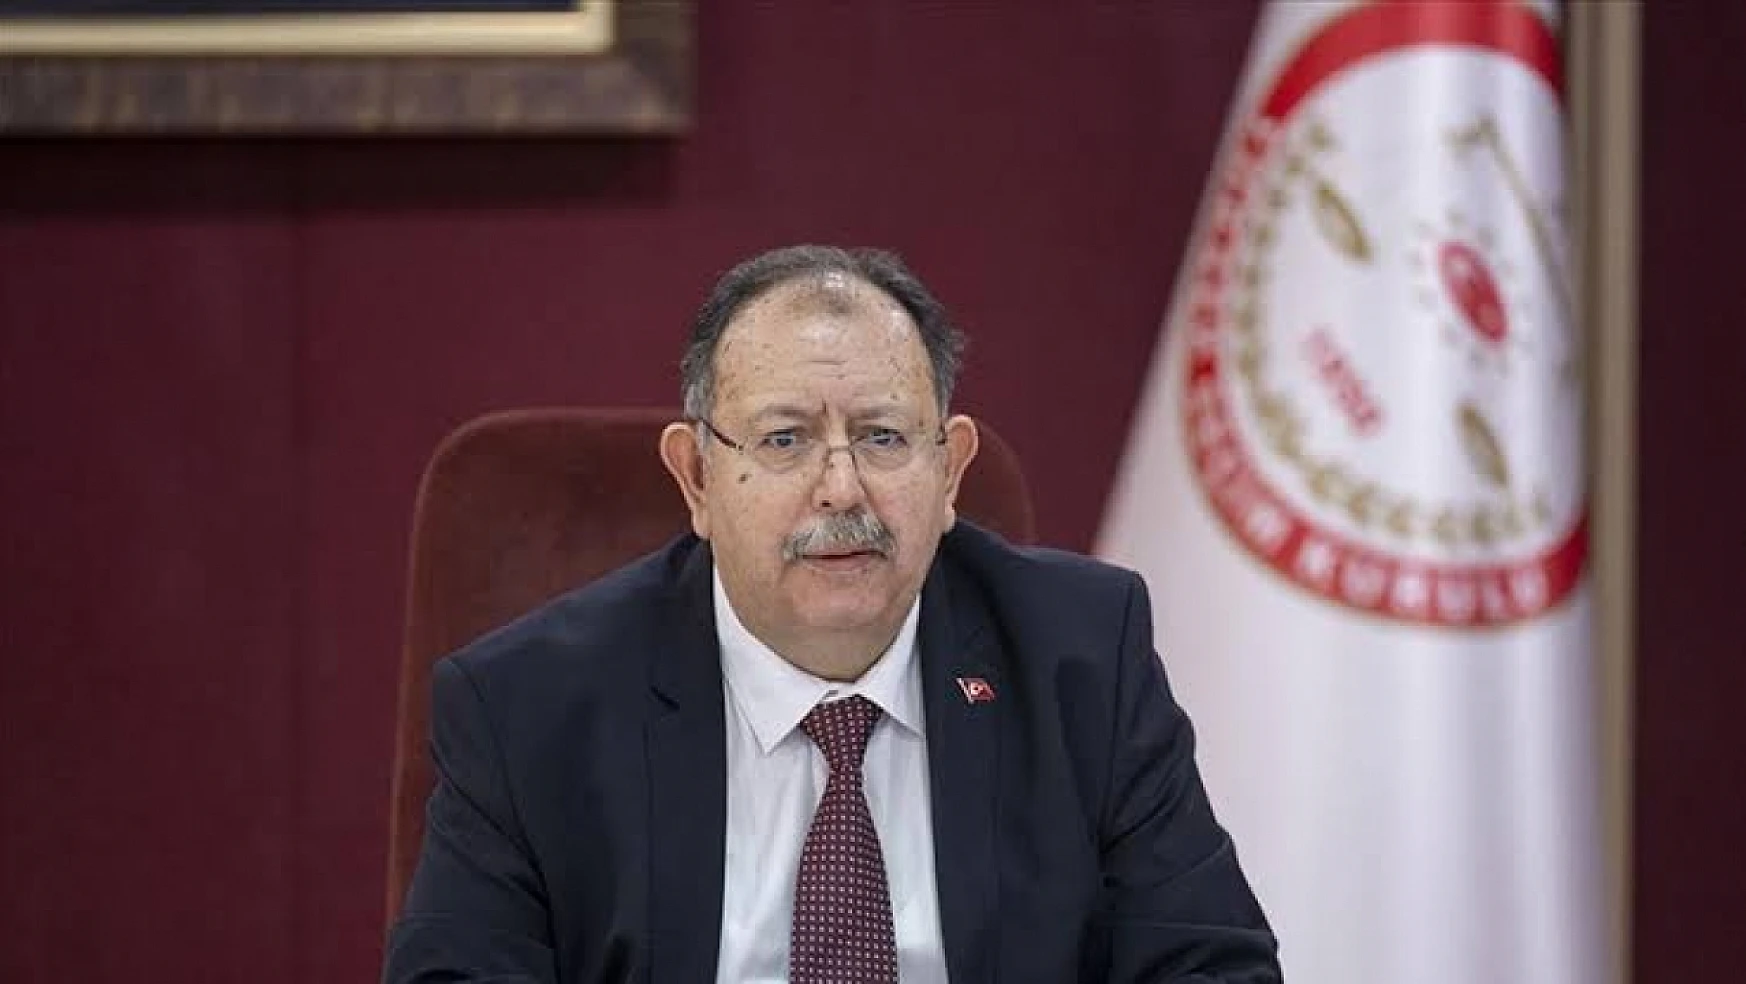 YSK Başkanı Yener, açılan sandık sonuçlarına ilişkin açıklamalarda bulundu